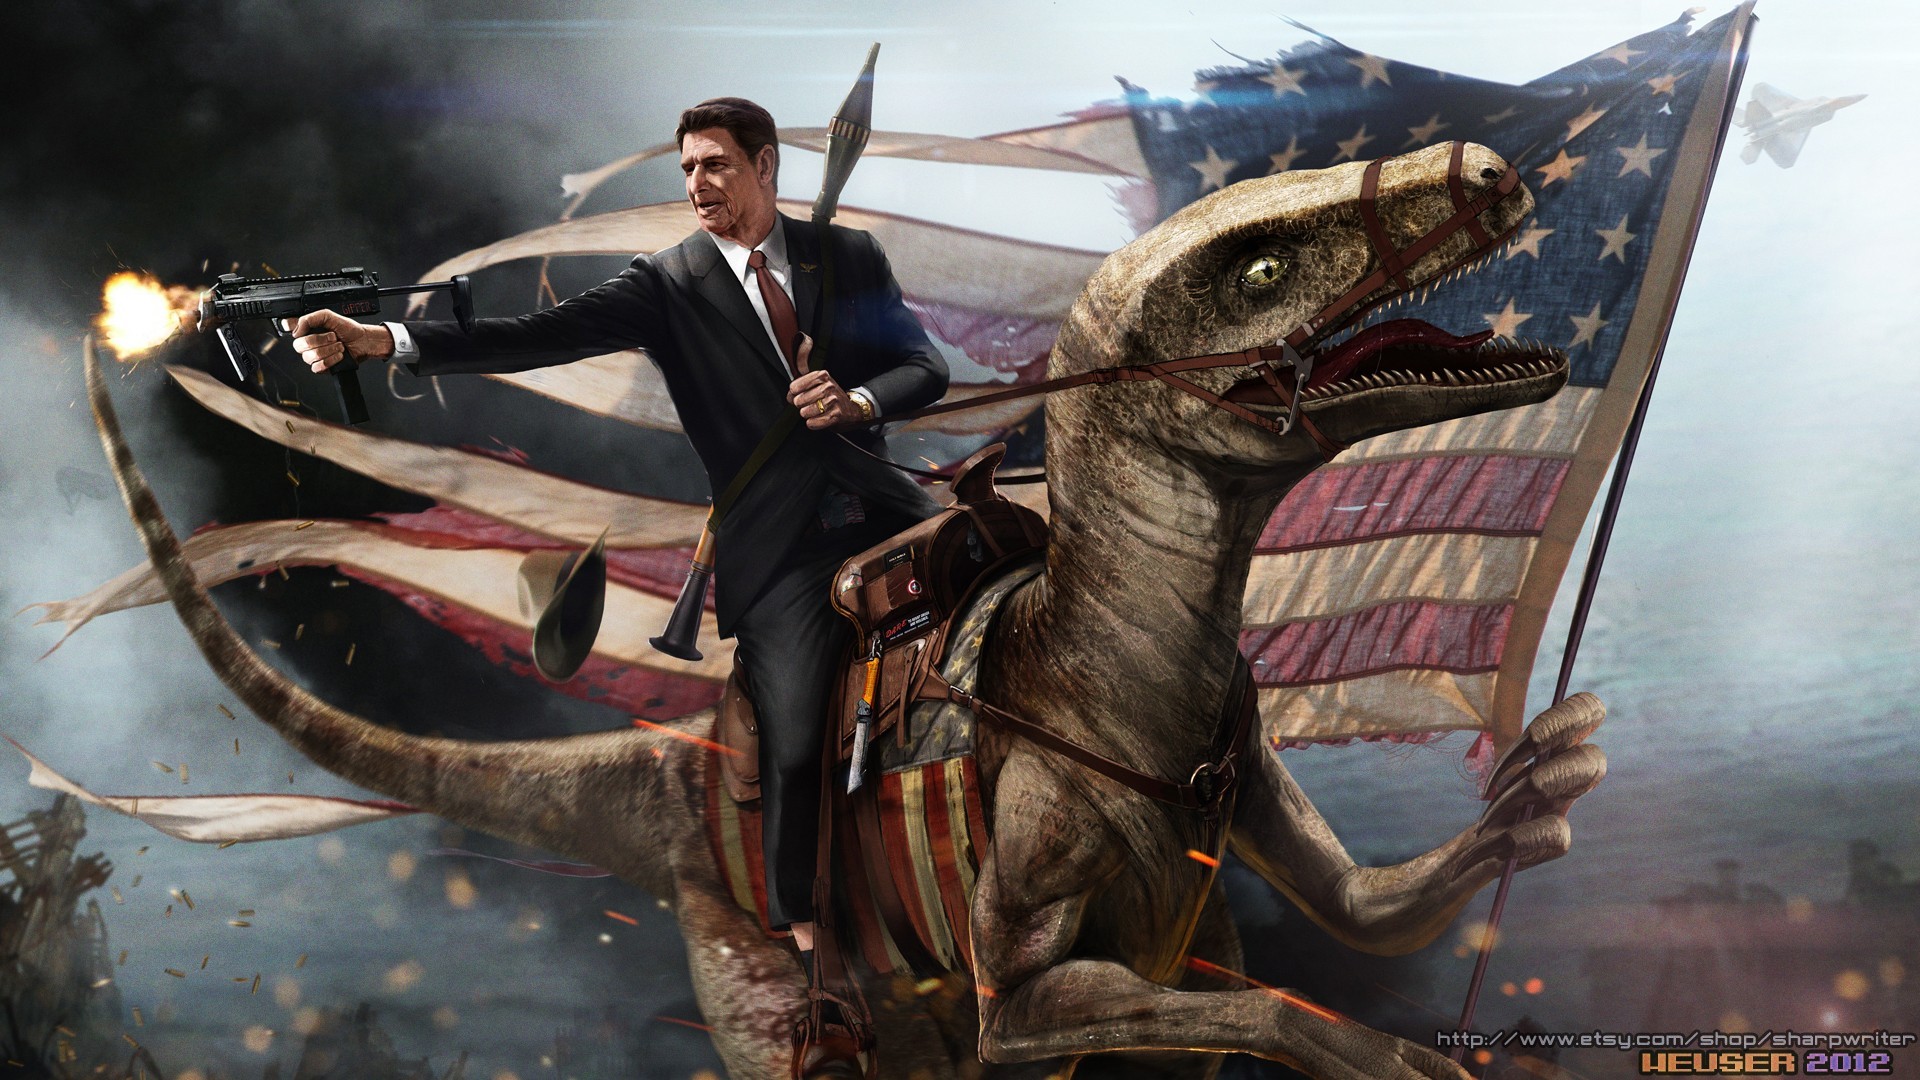 General 1920x1080 humor digital art Ronald Reagan flag dinosaurs gun